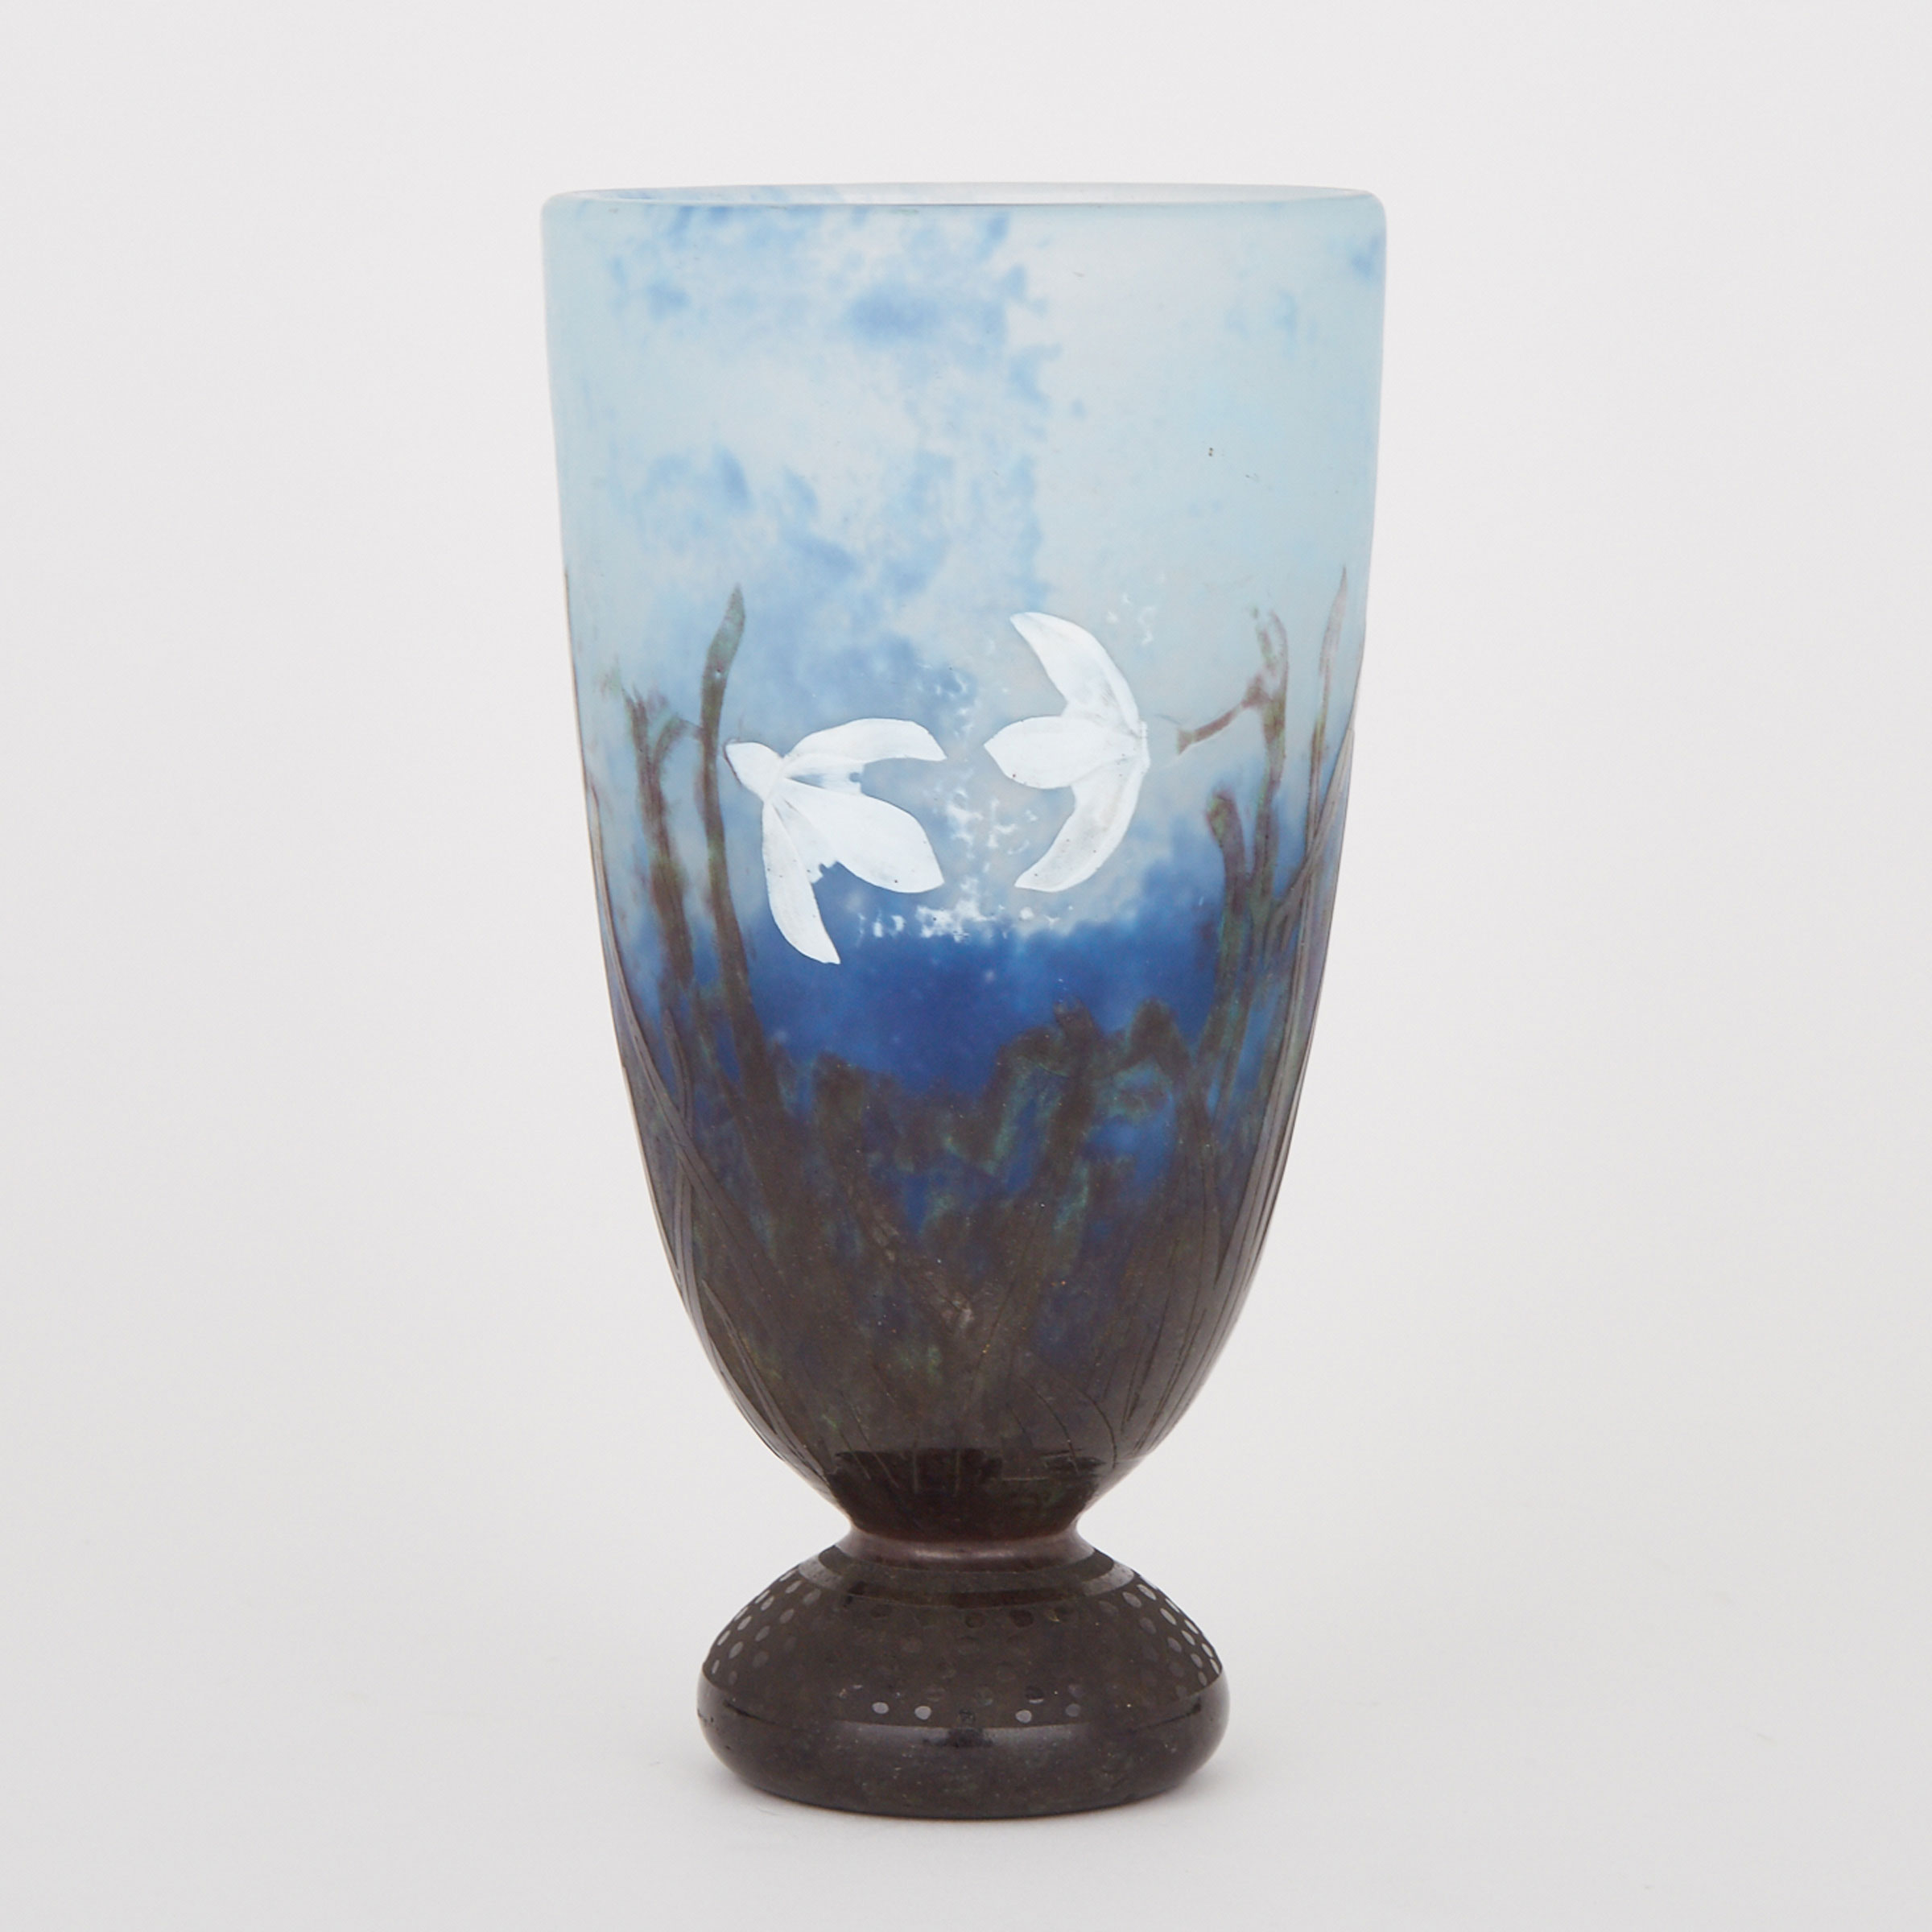 Daum Cameo Glass ‘Snowdrop’ Vase, c.1900